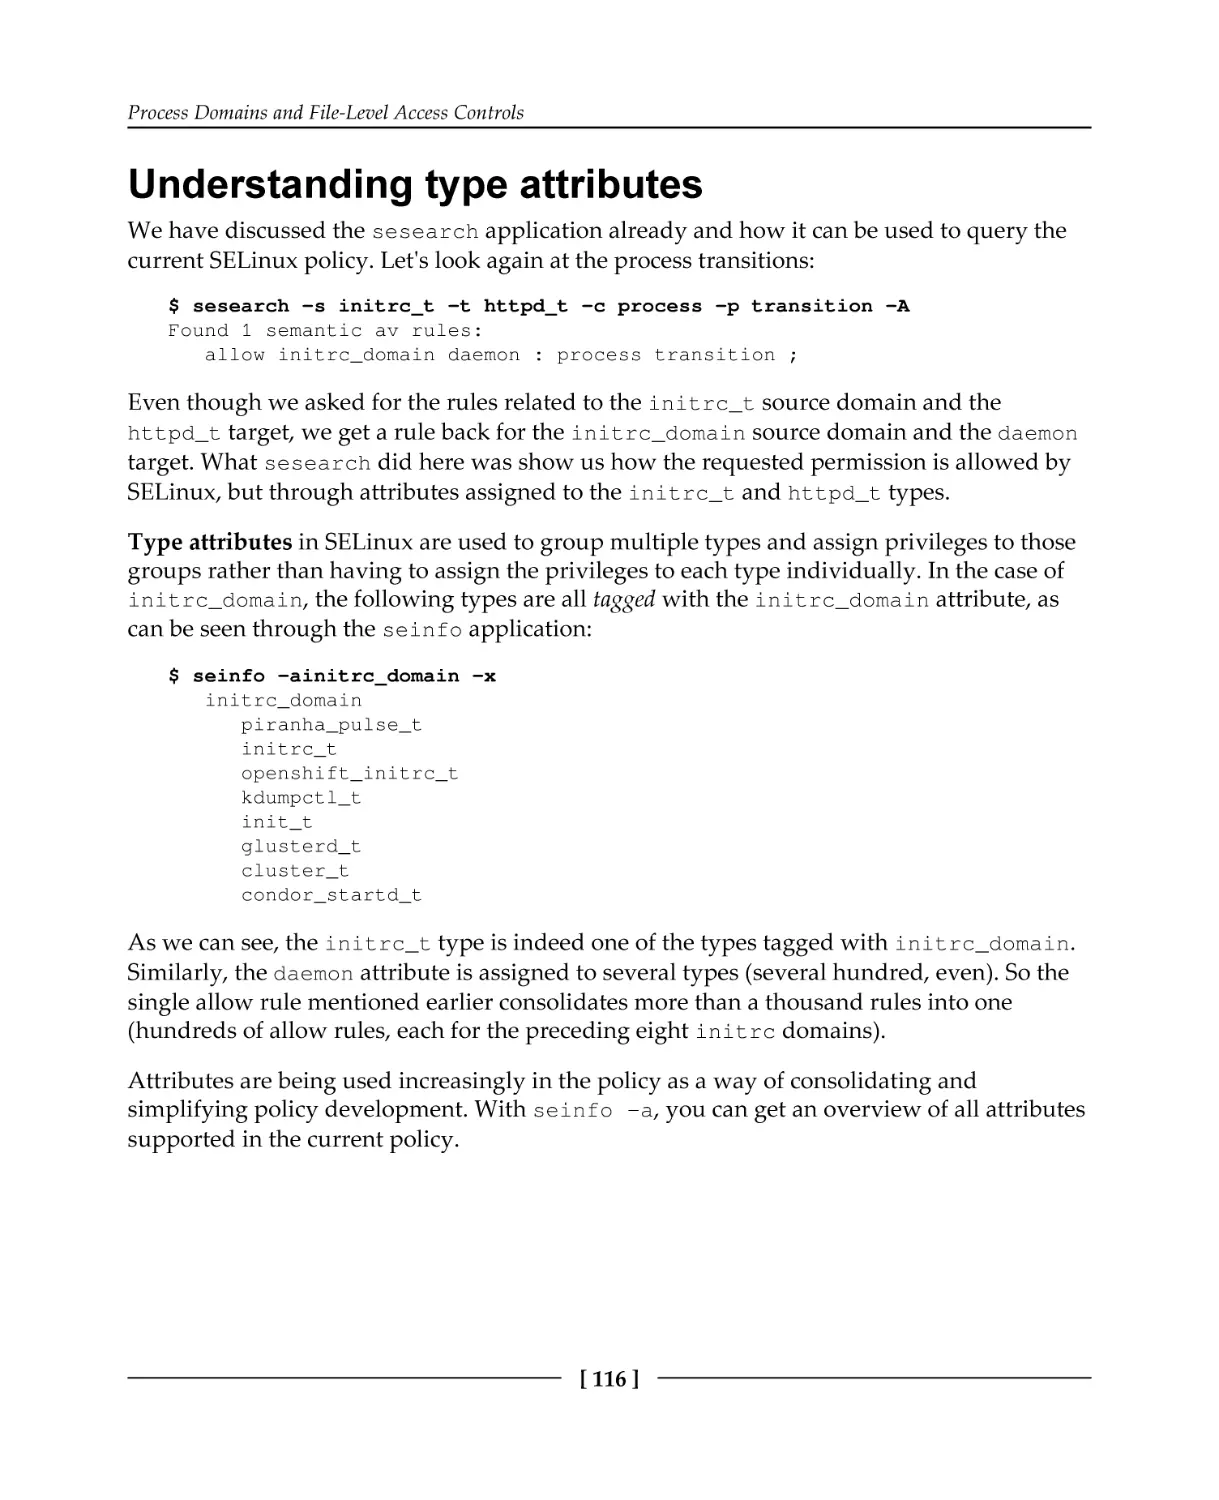 Understanding type attributes